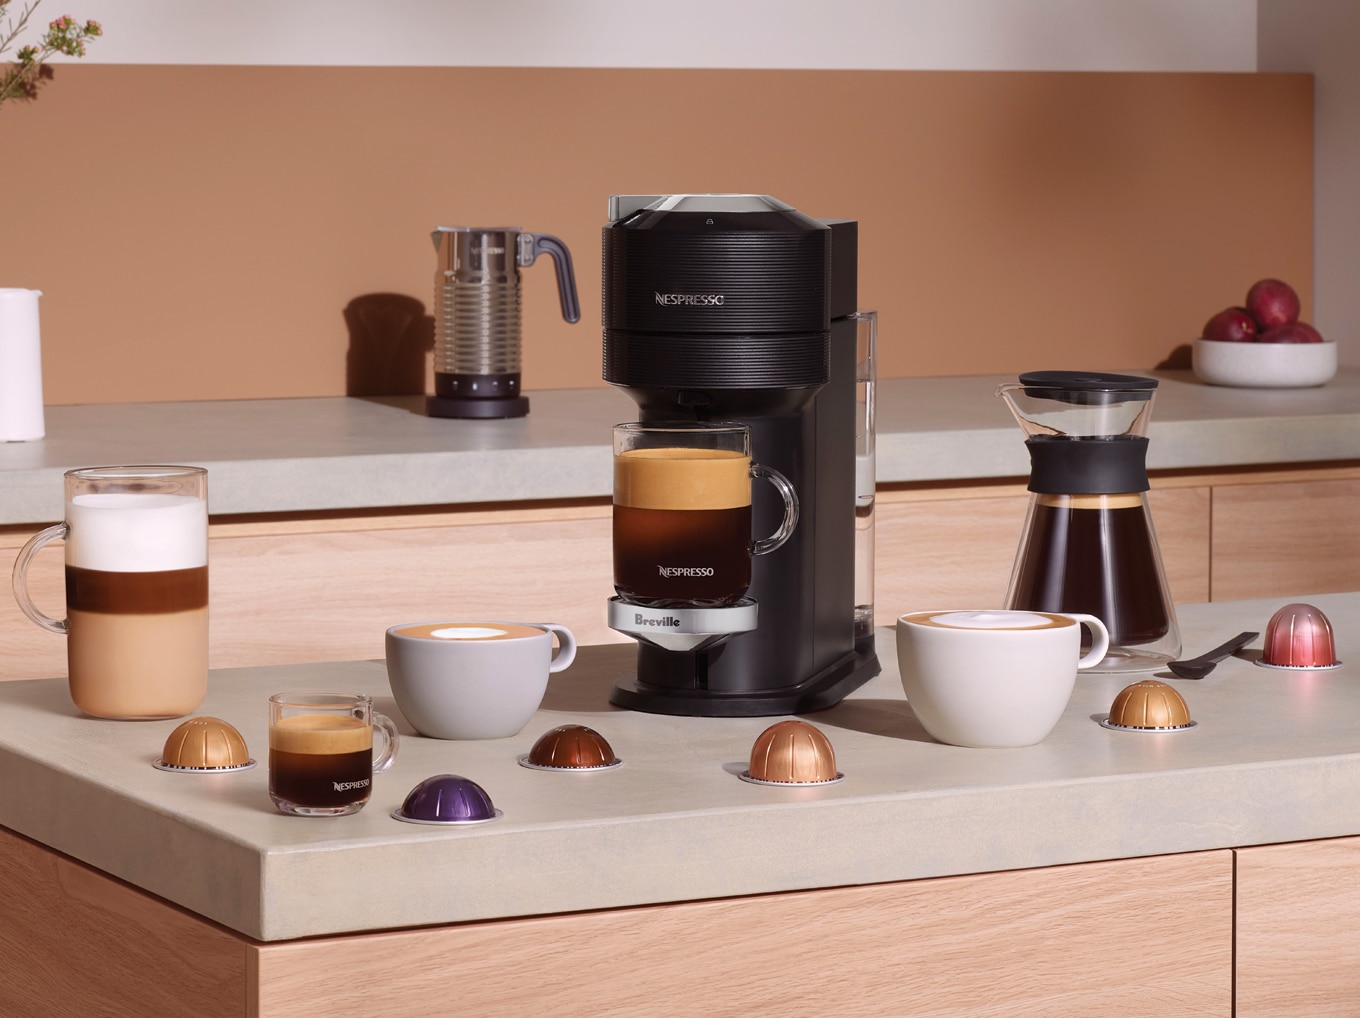 Registreer een koffiezetapparaat gekocht via een detailhandelaar | Nespresso Canada